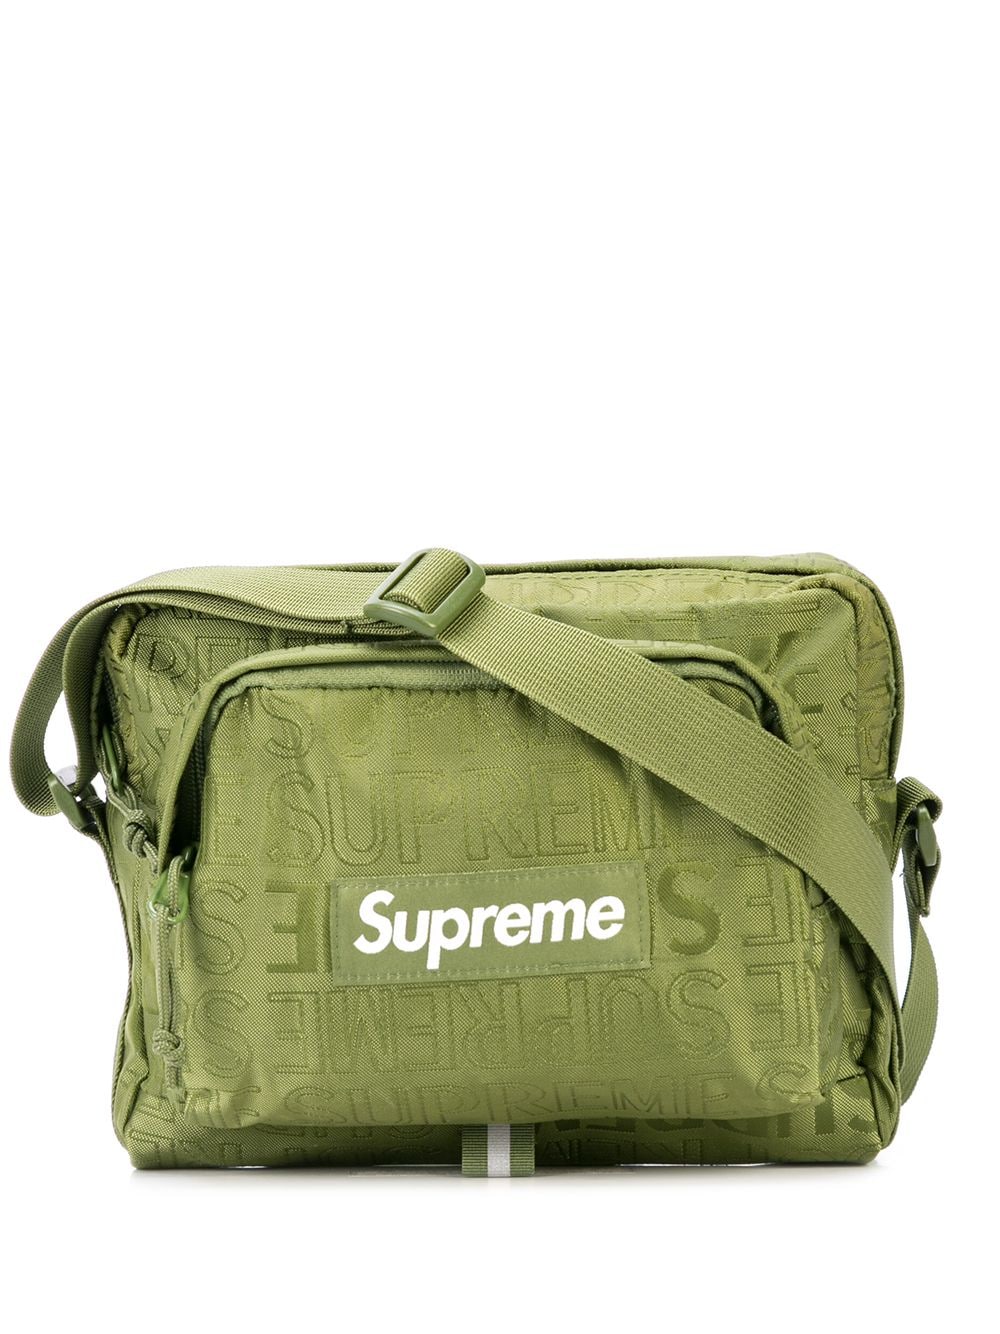 Supreme Ss19 Shoulder Bag Olive | Supreme HypeBeast Product